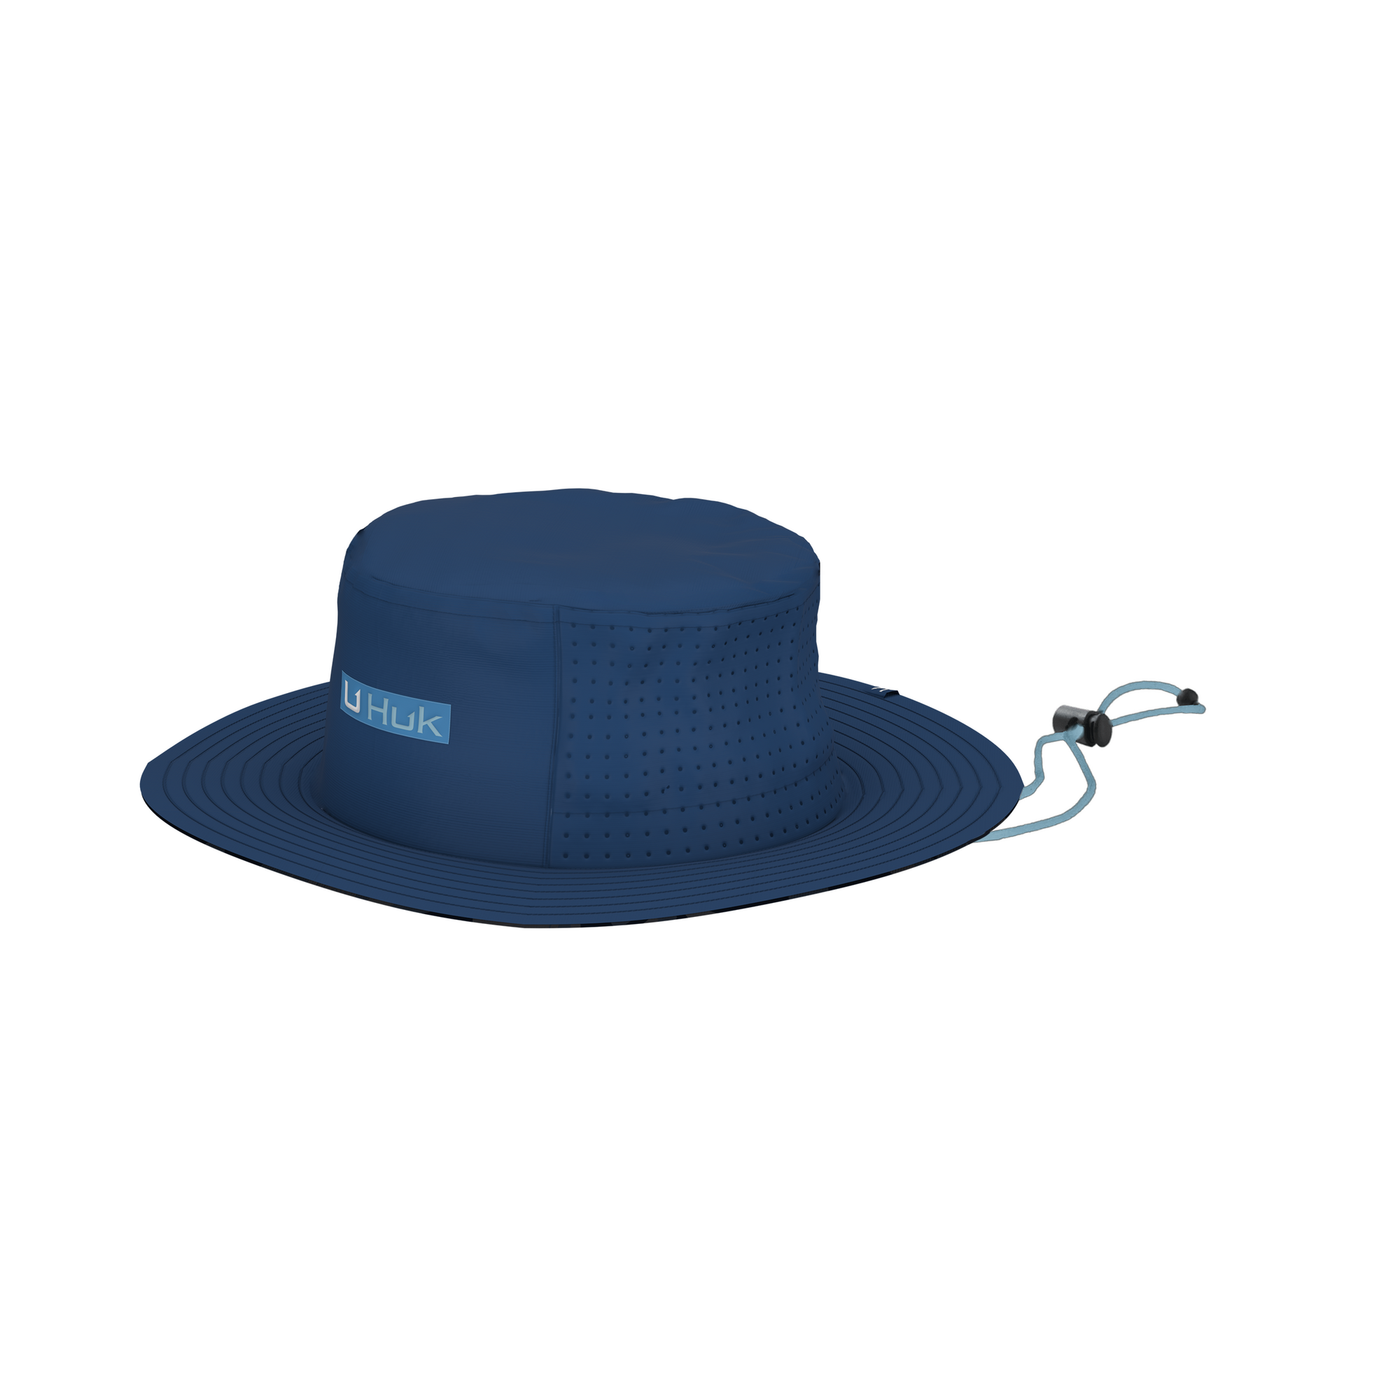 Titanium Blue Ocean Palm Straw Hat by Huk